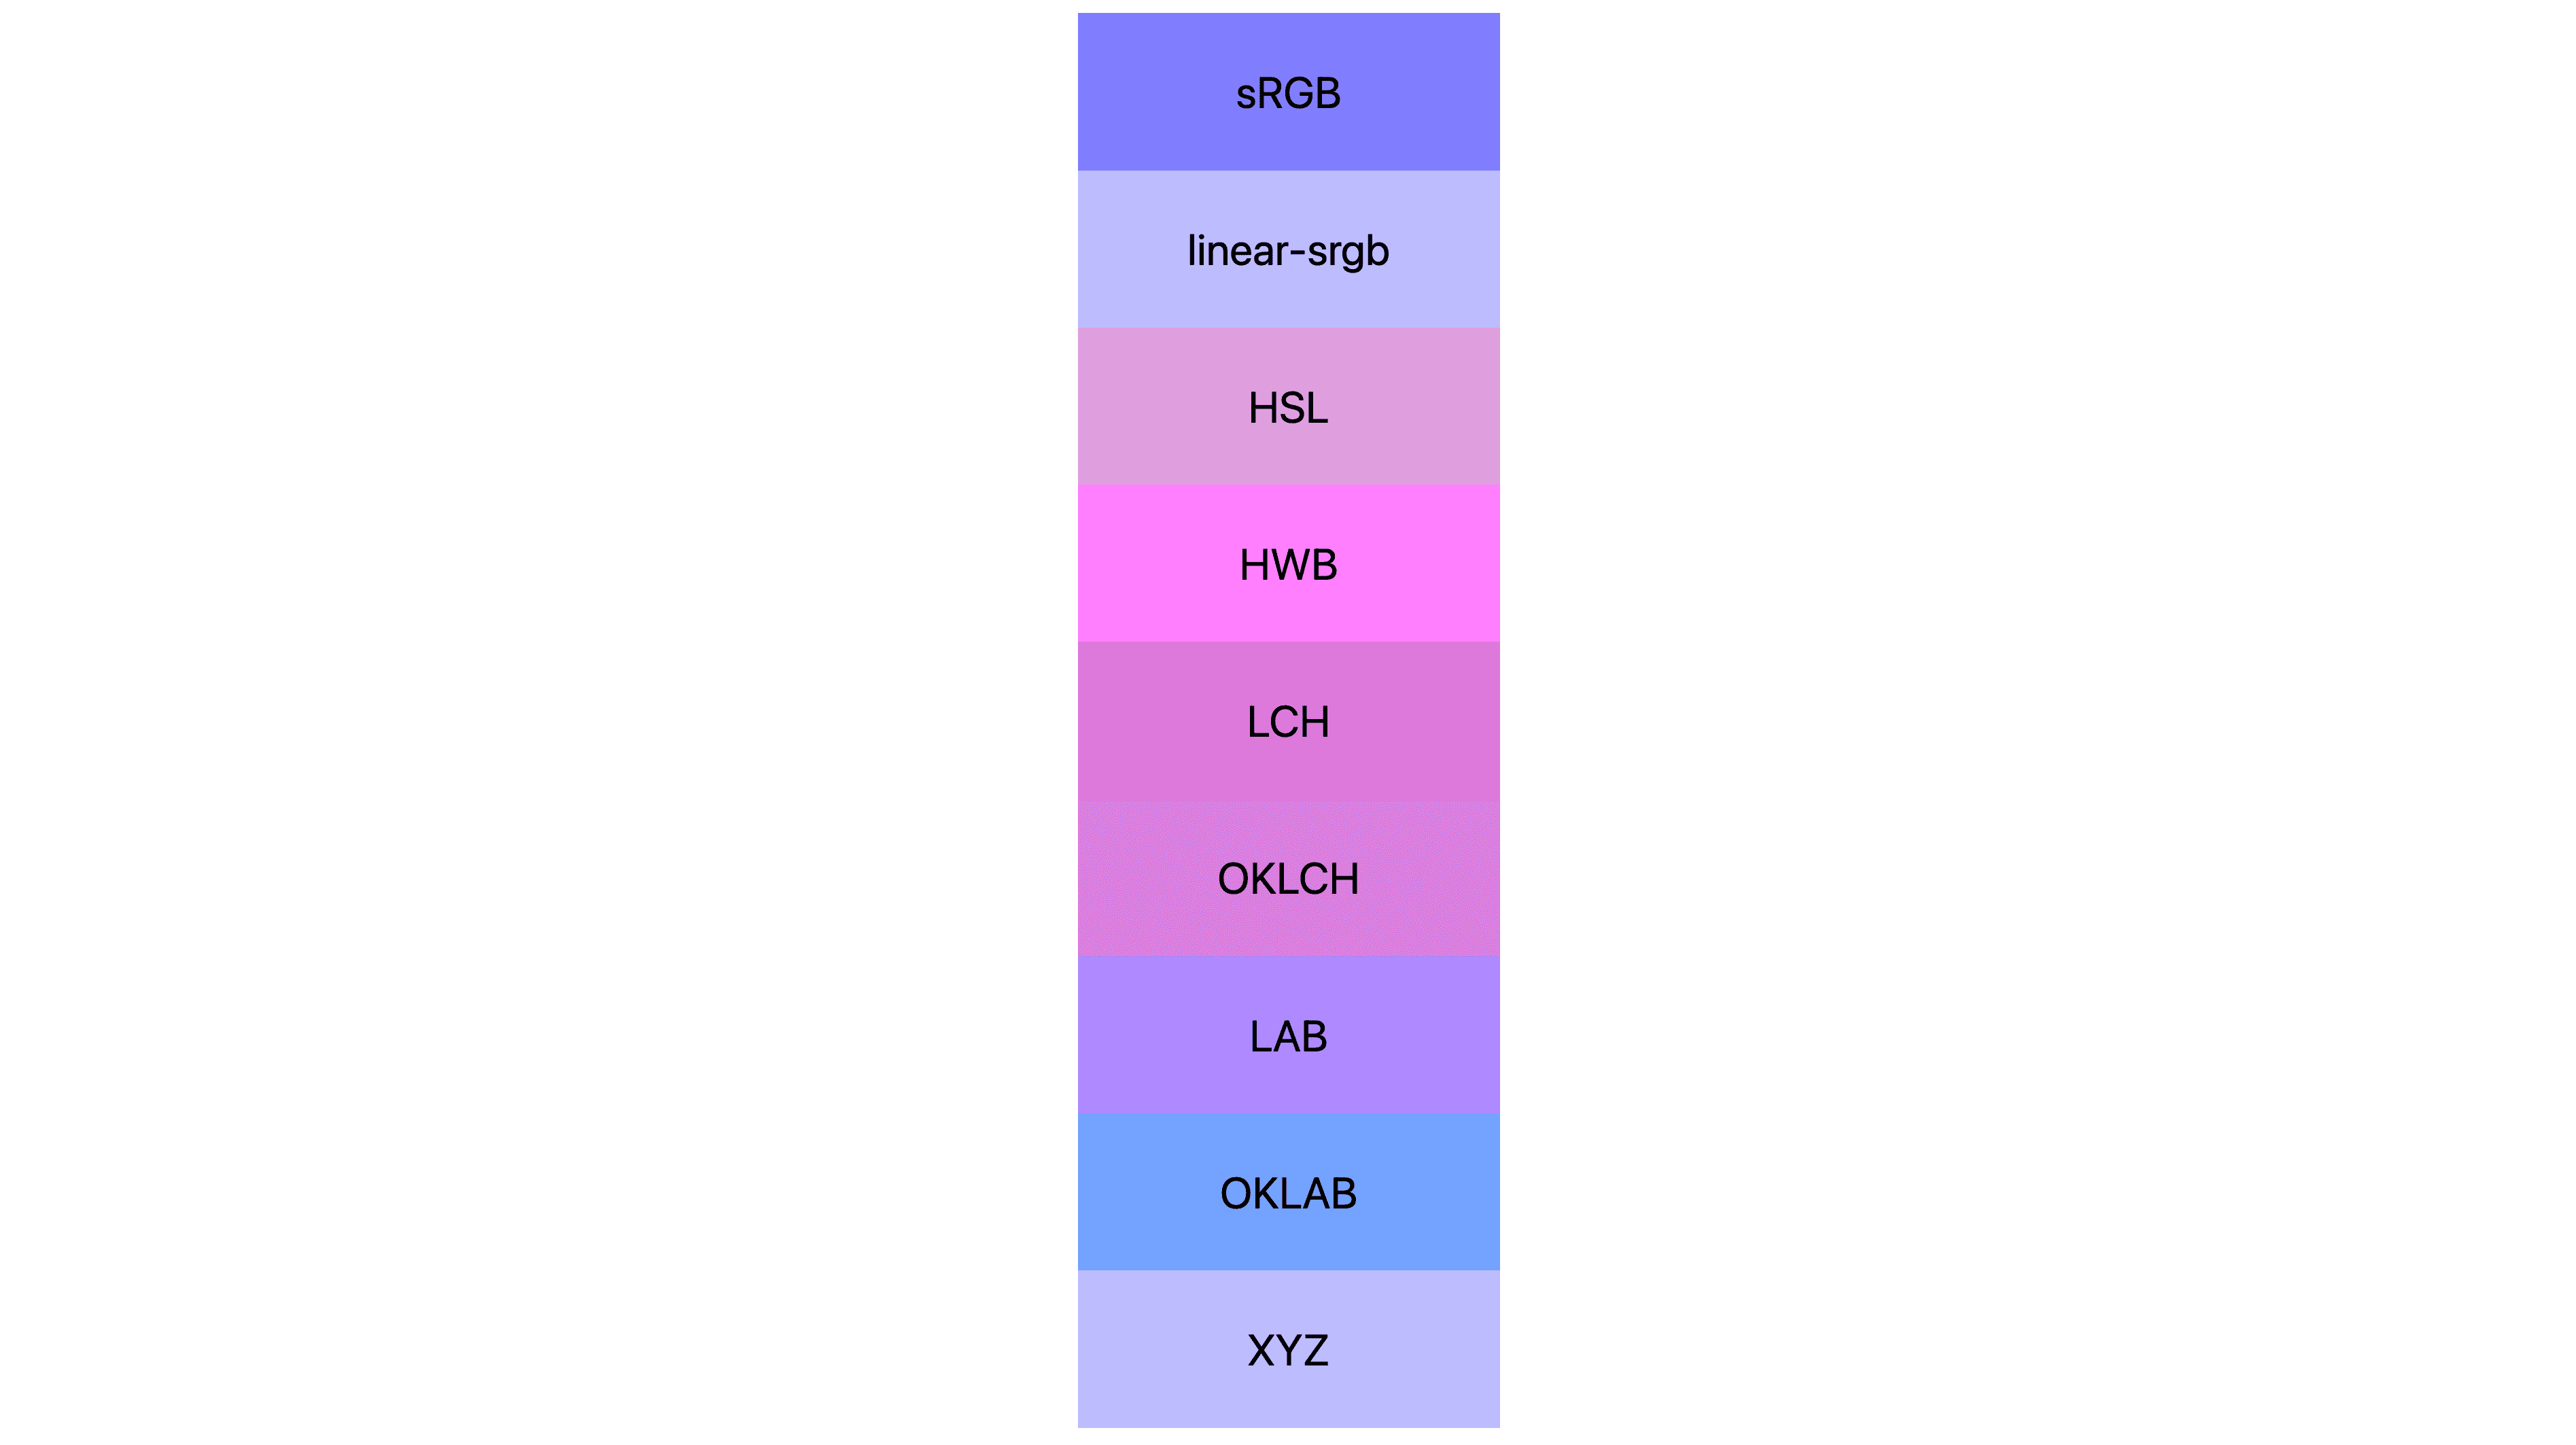 7 个颜色空间（srgb、linear-srgb、lch、oklch、lab、oklab、xyz），每种颜色显示的结果都不同。很多都是粉色或紫色的，但很少是蓝色的。